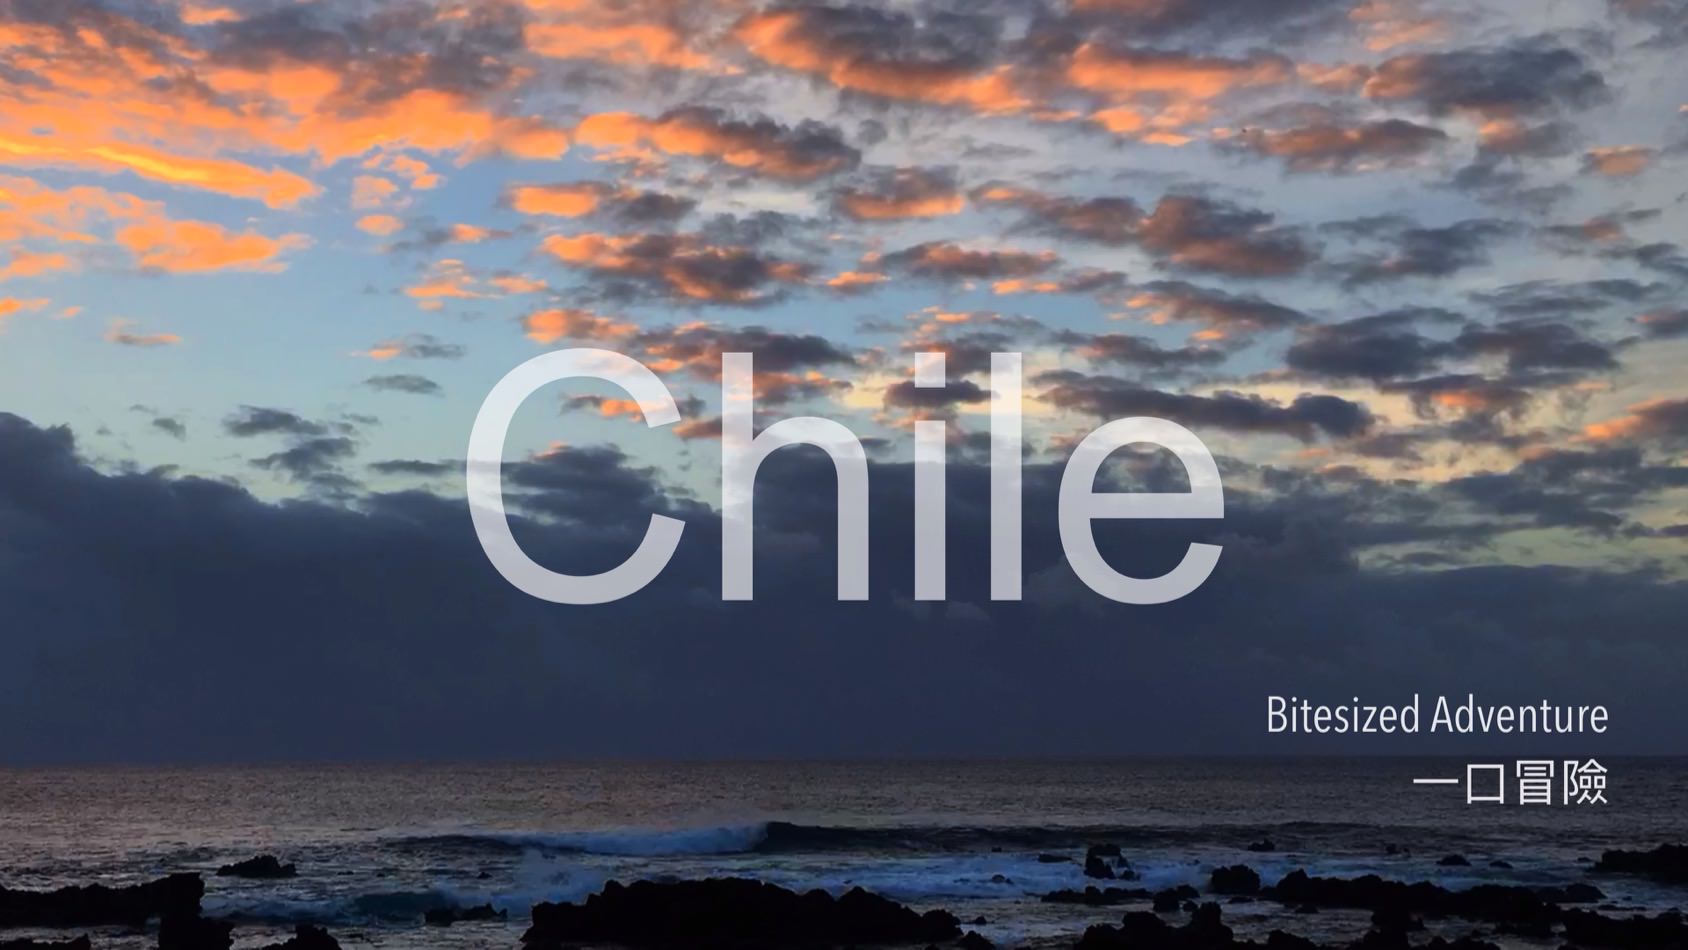 智利 - 一口冒險 Bitesized Adventure